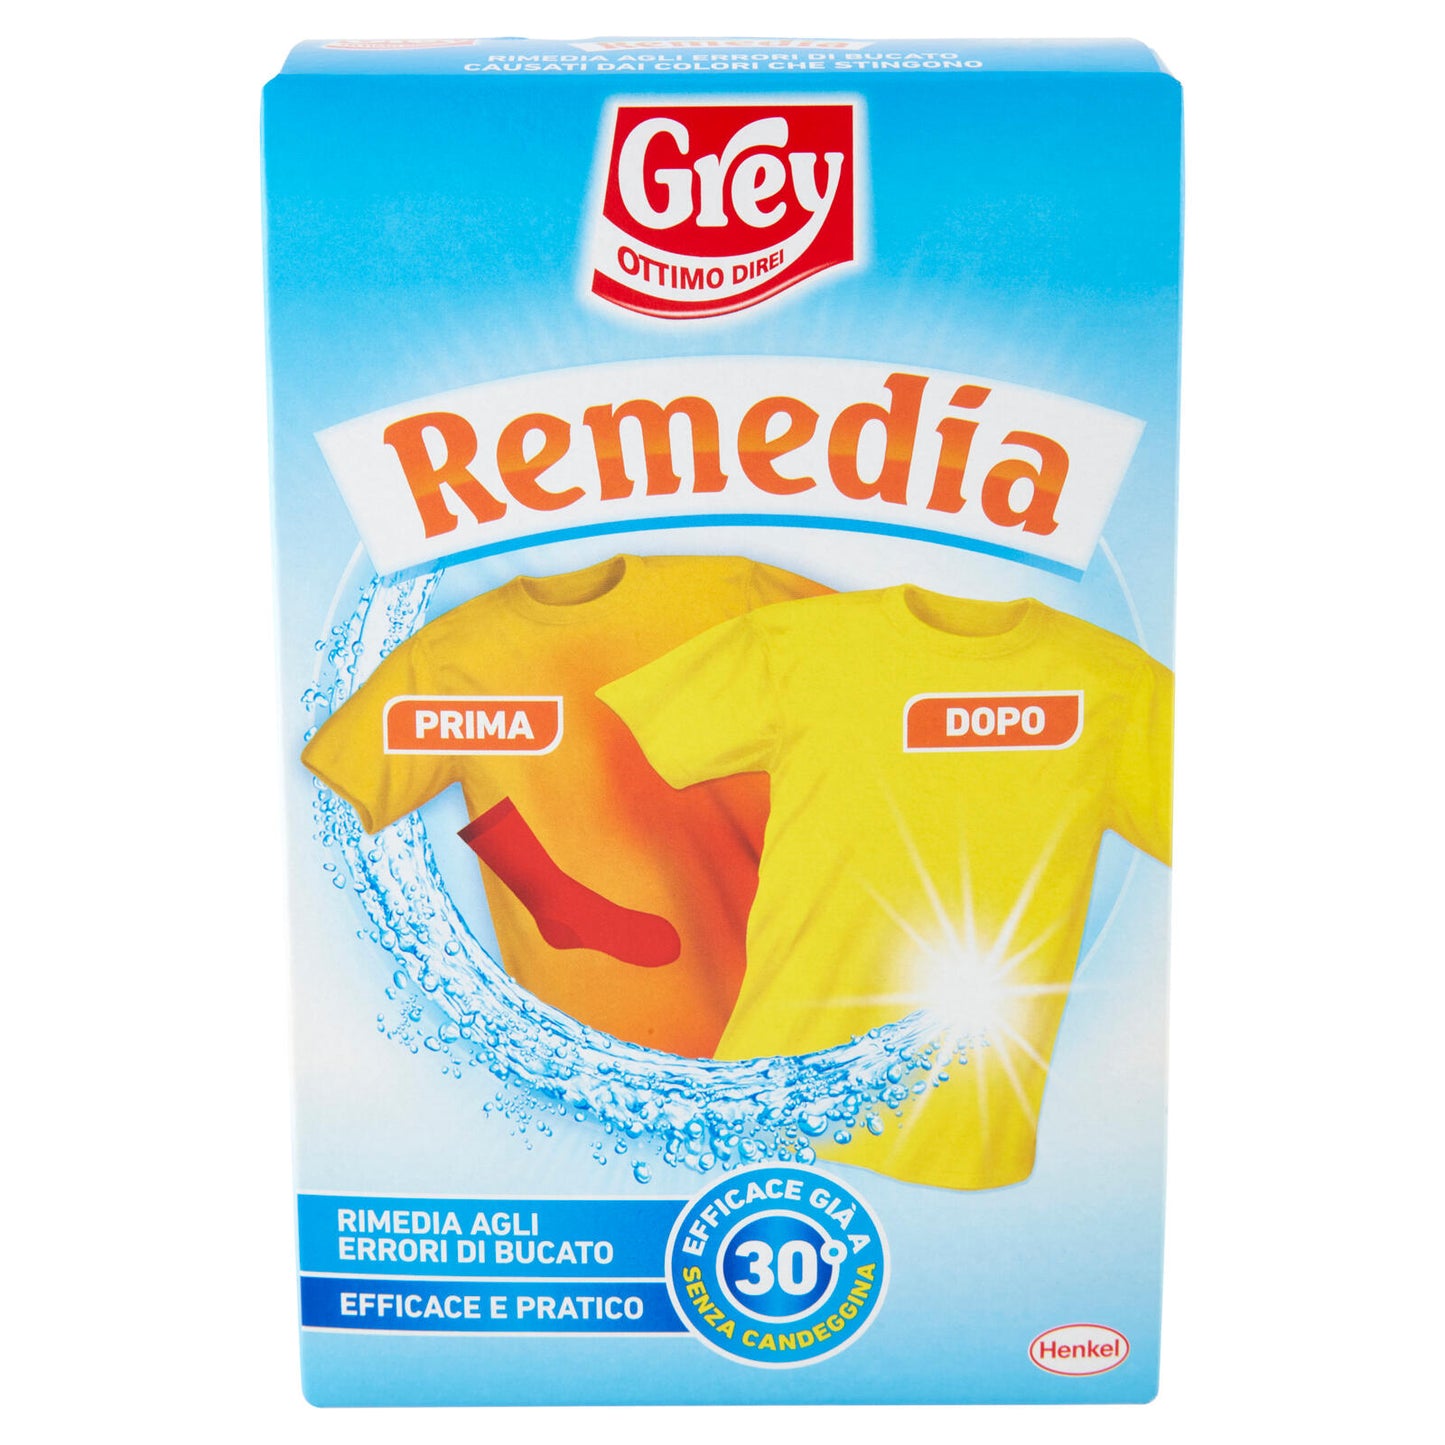 GREY Remedia 200 g ->